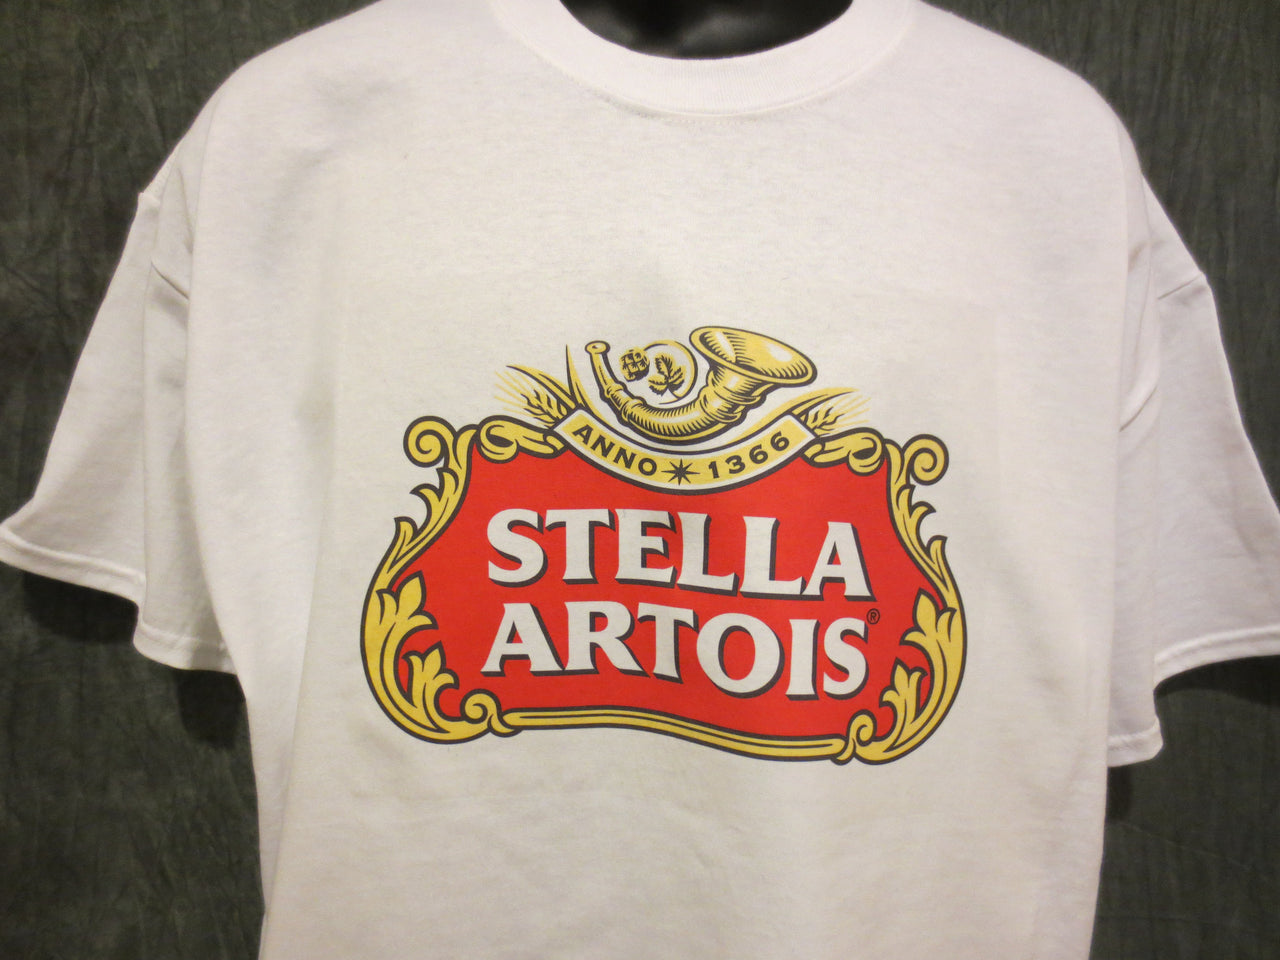 Stella Artois Beer Tshirt - TshirtNow.net - 6